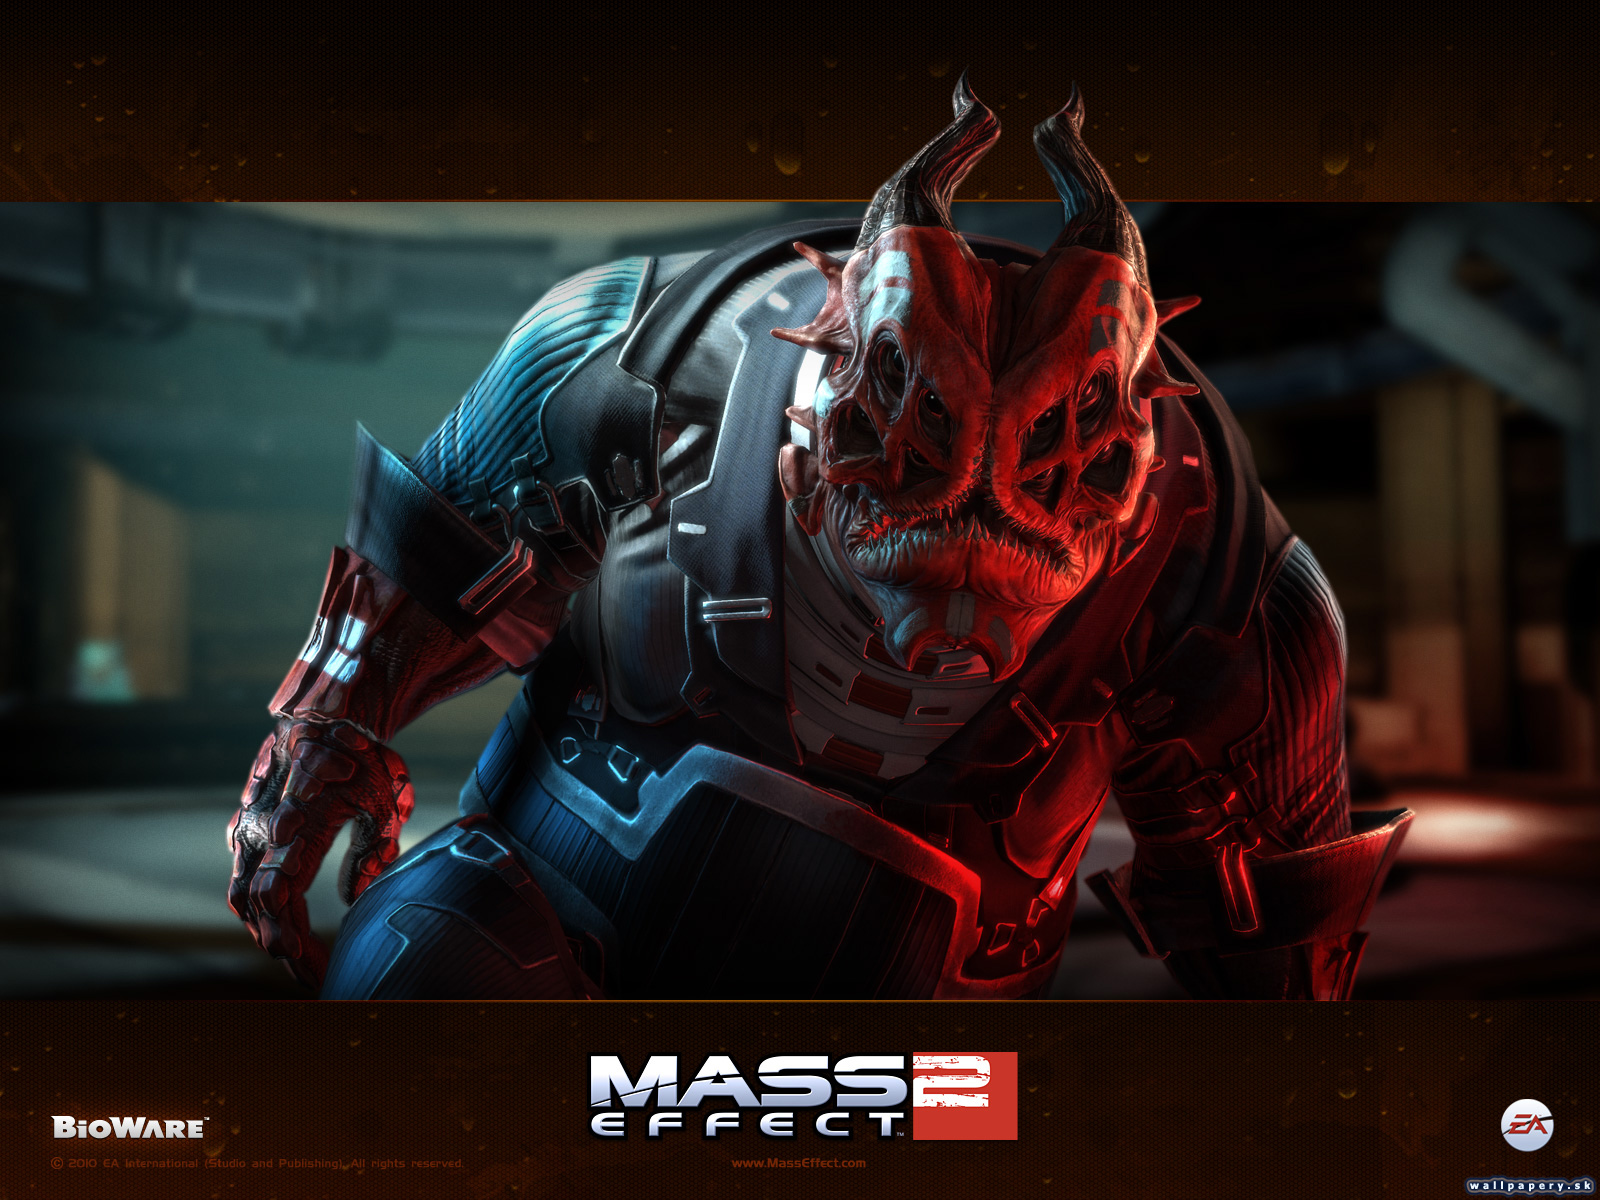 Mass Effect 2: Lair of the Shadow Broker - wallpaper 2